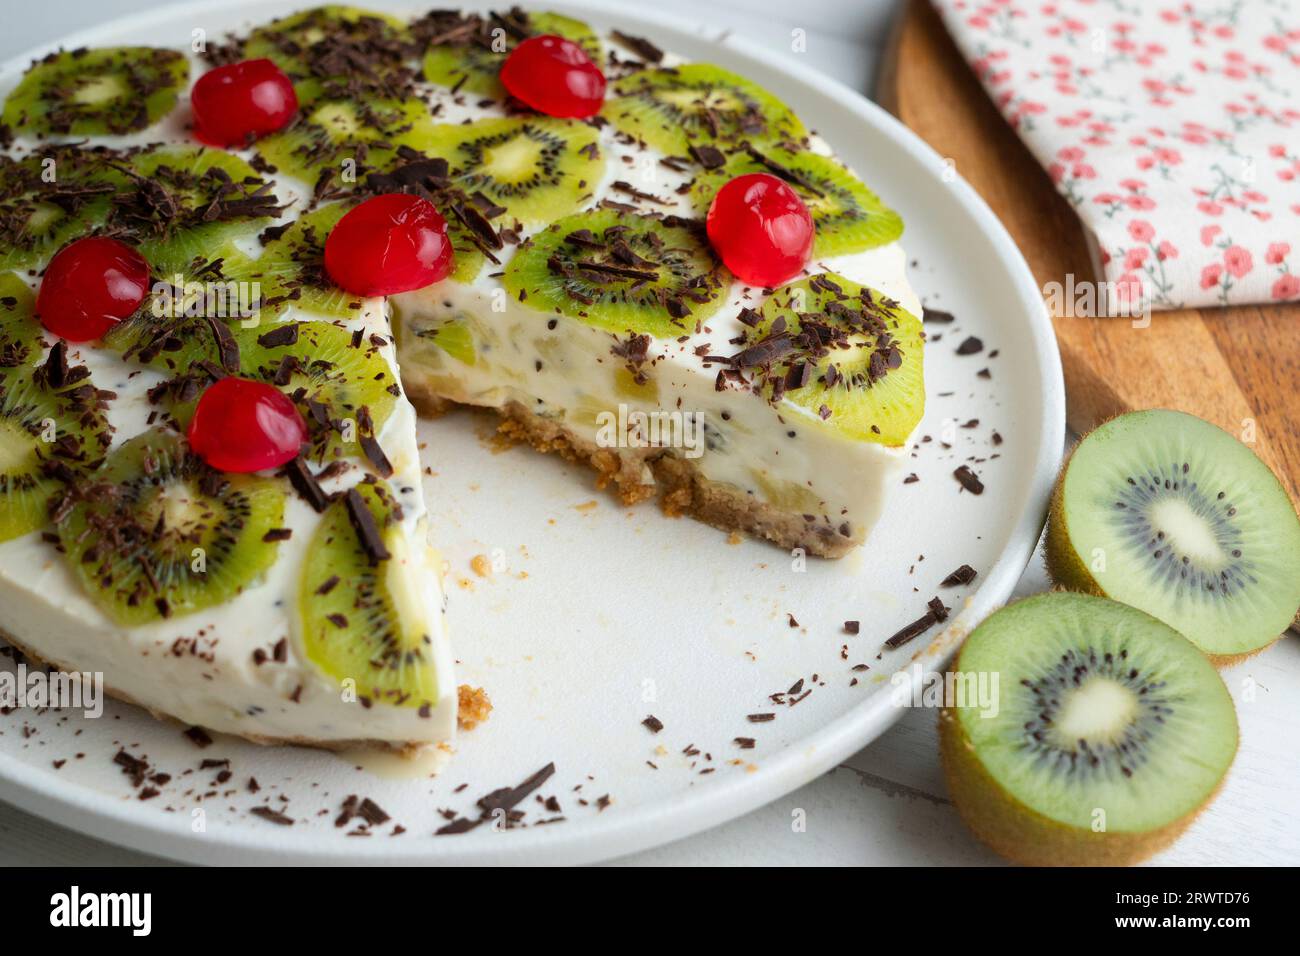 Rubi y pastel de kiwi con una base de galleta decorada con chocolate rallado. Foto de stock